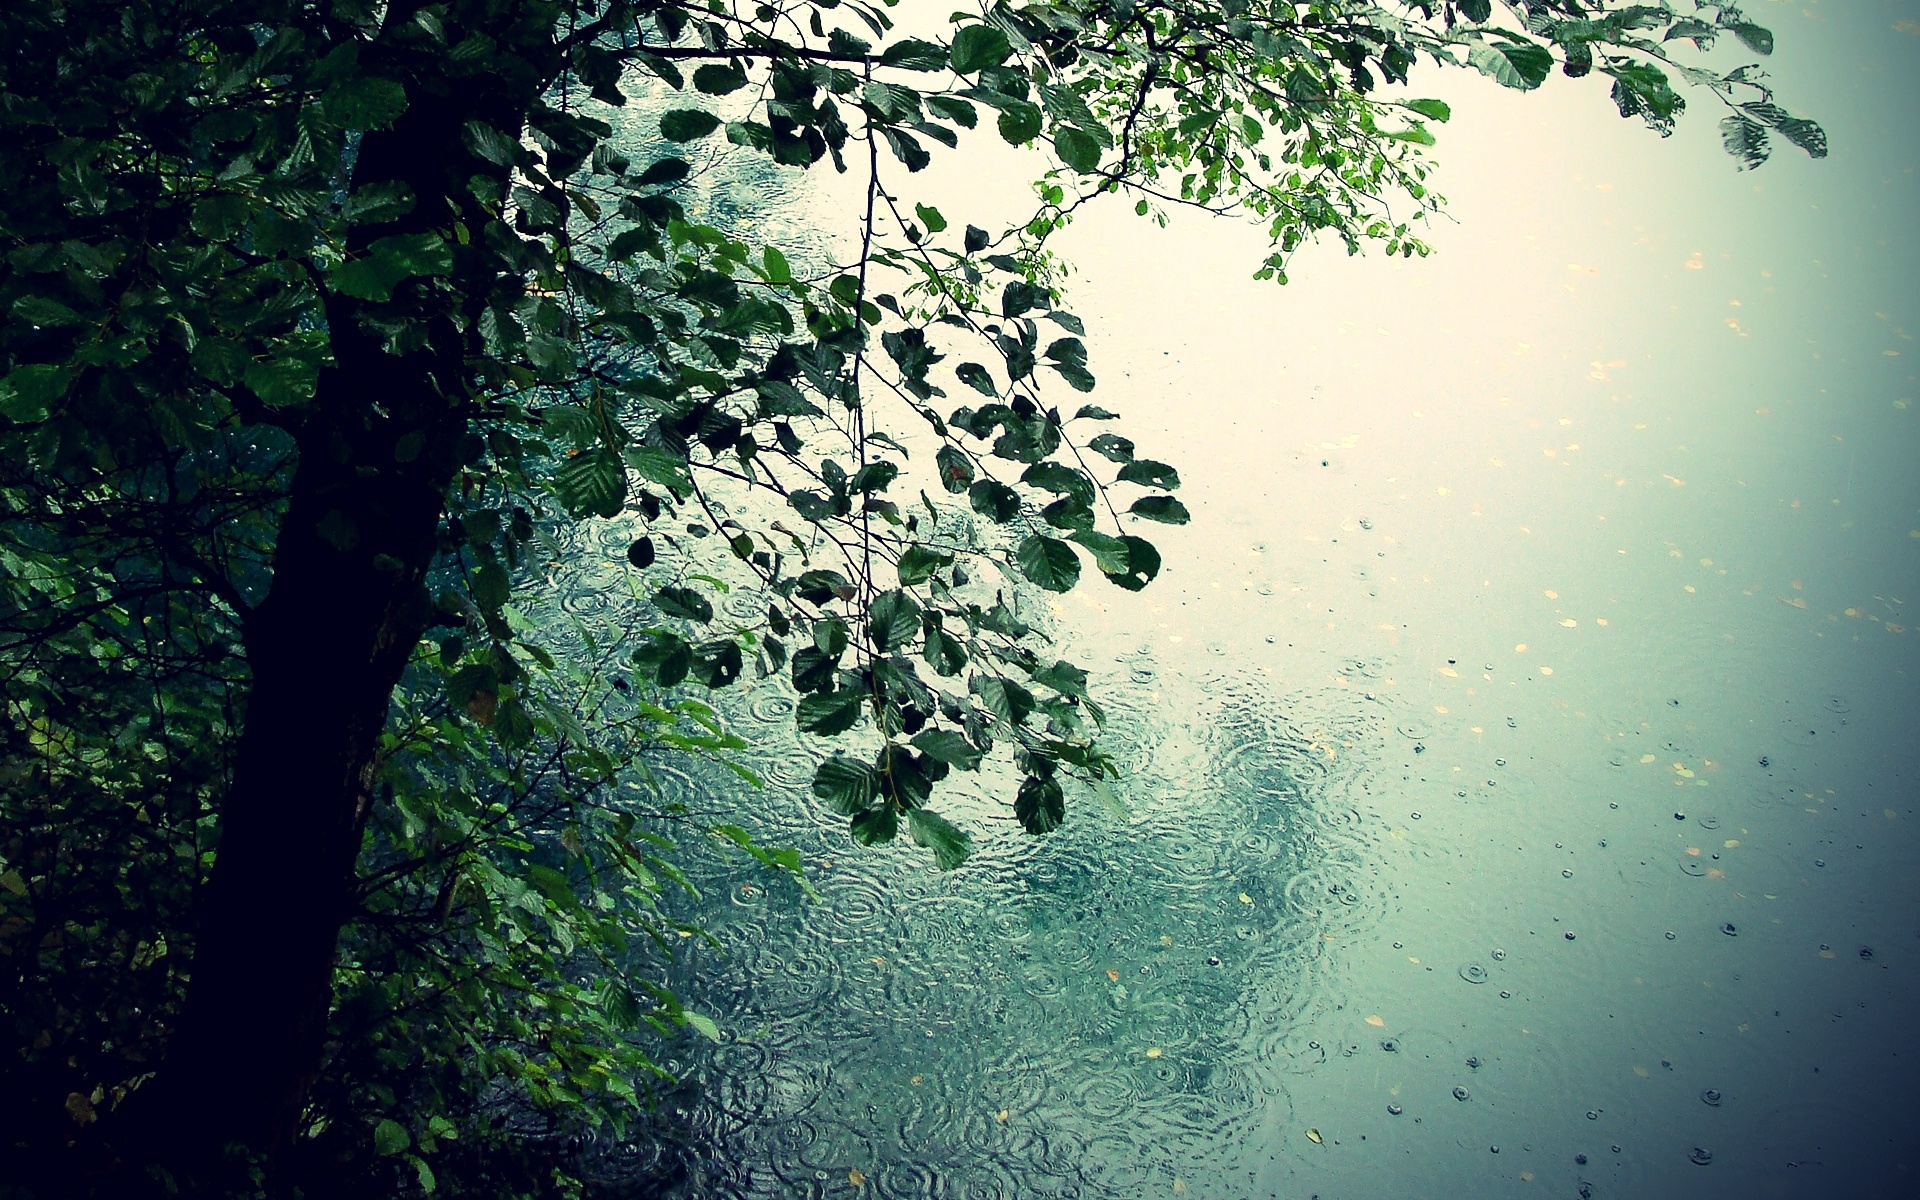 Скачать обои бесплатно Дождь, Дерево, Фотографии картинка на рабочий стол ПК